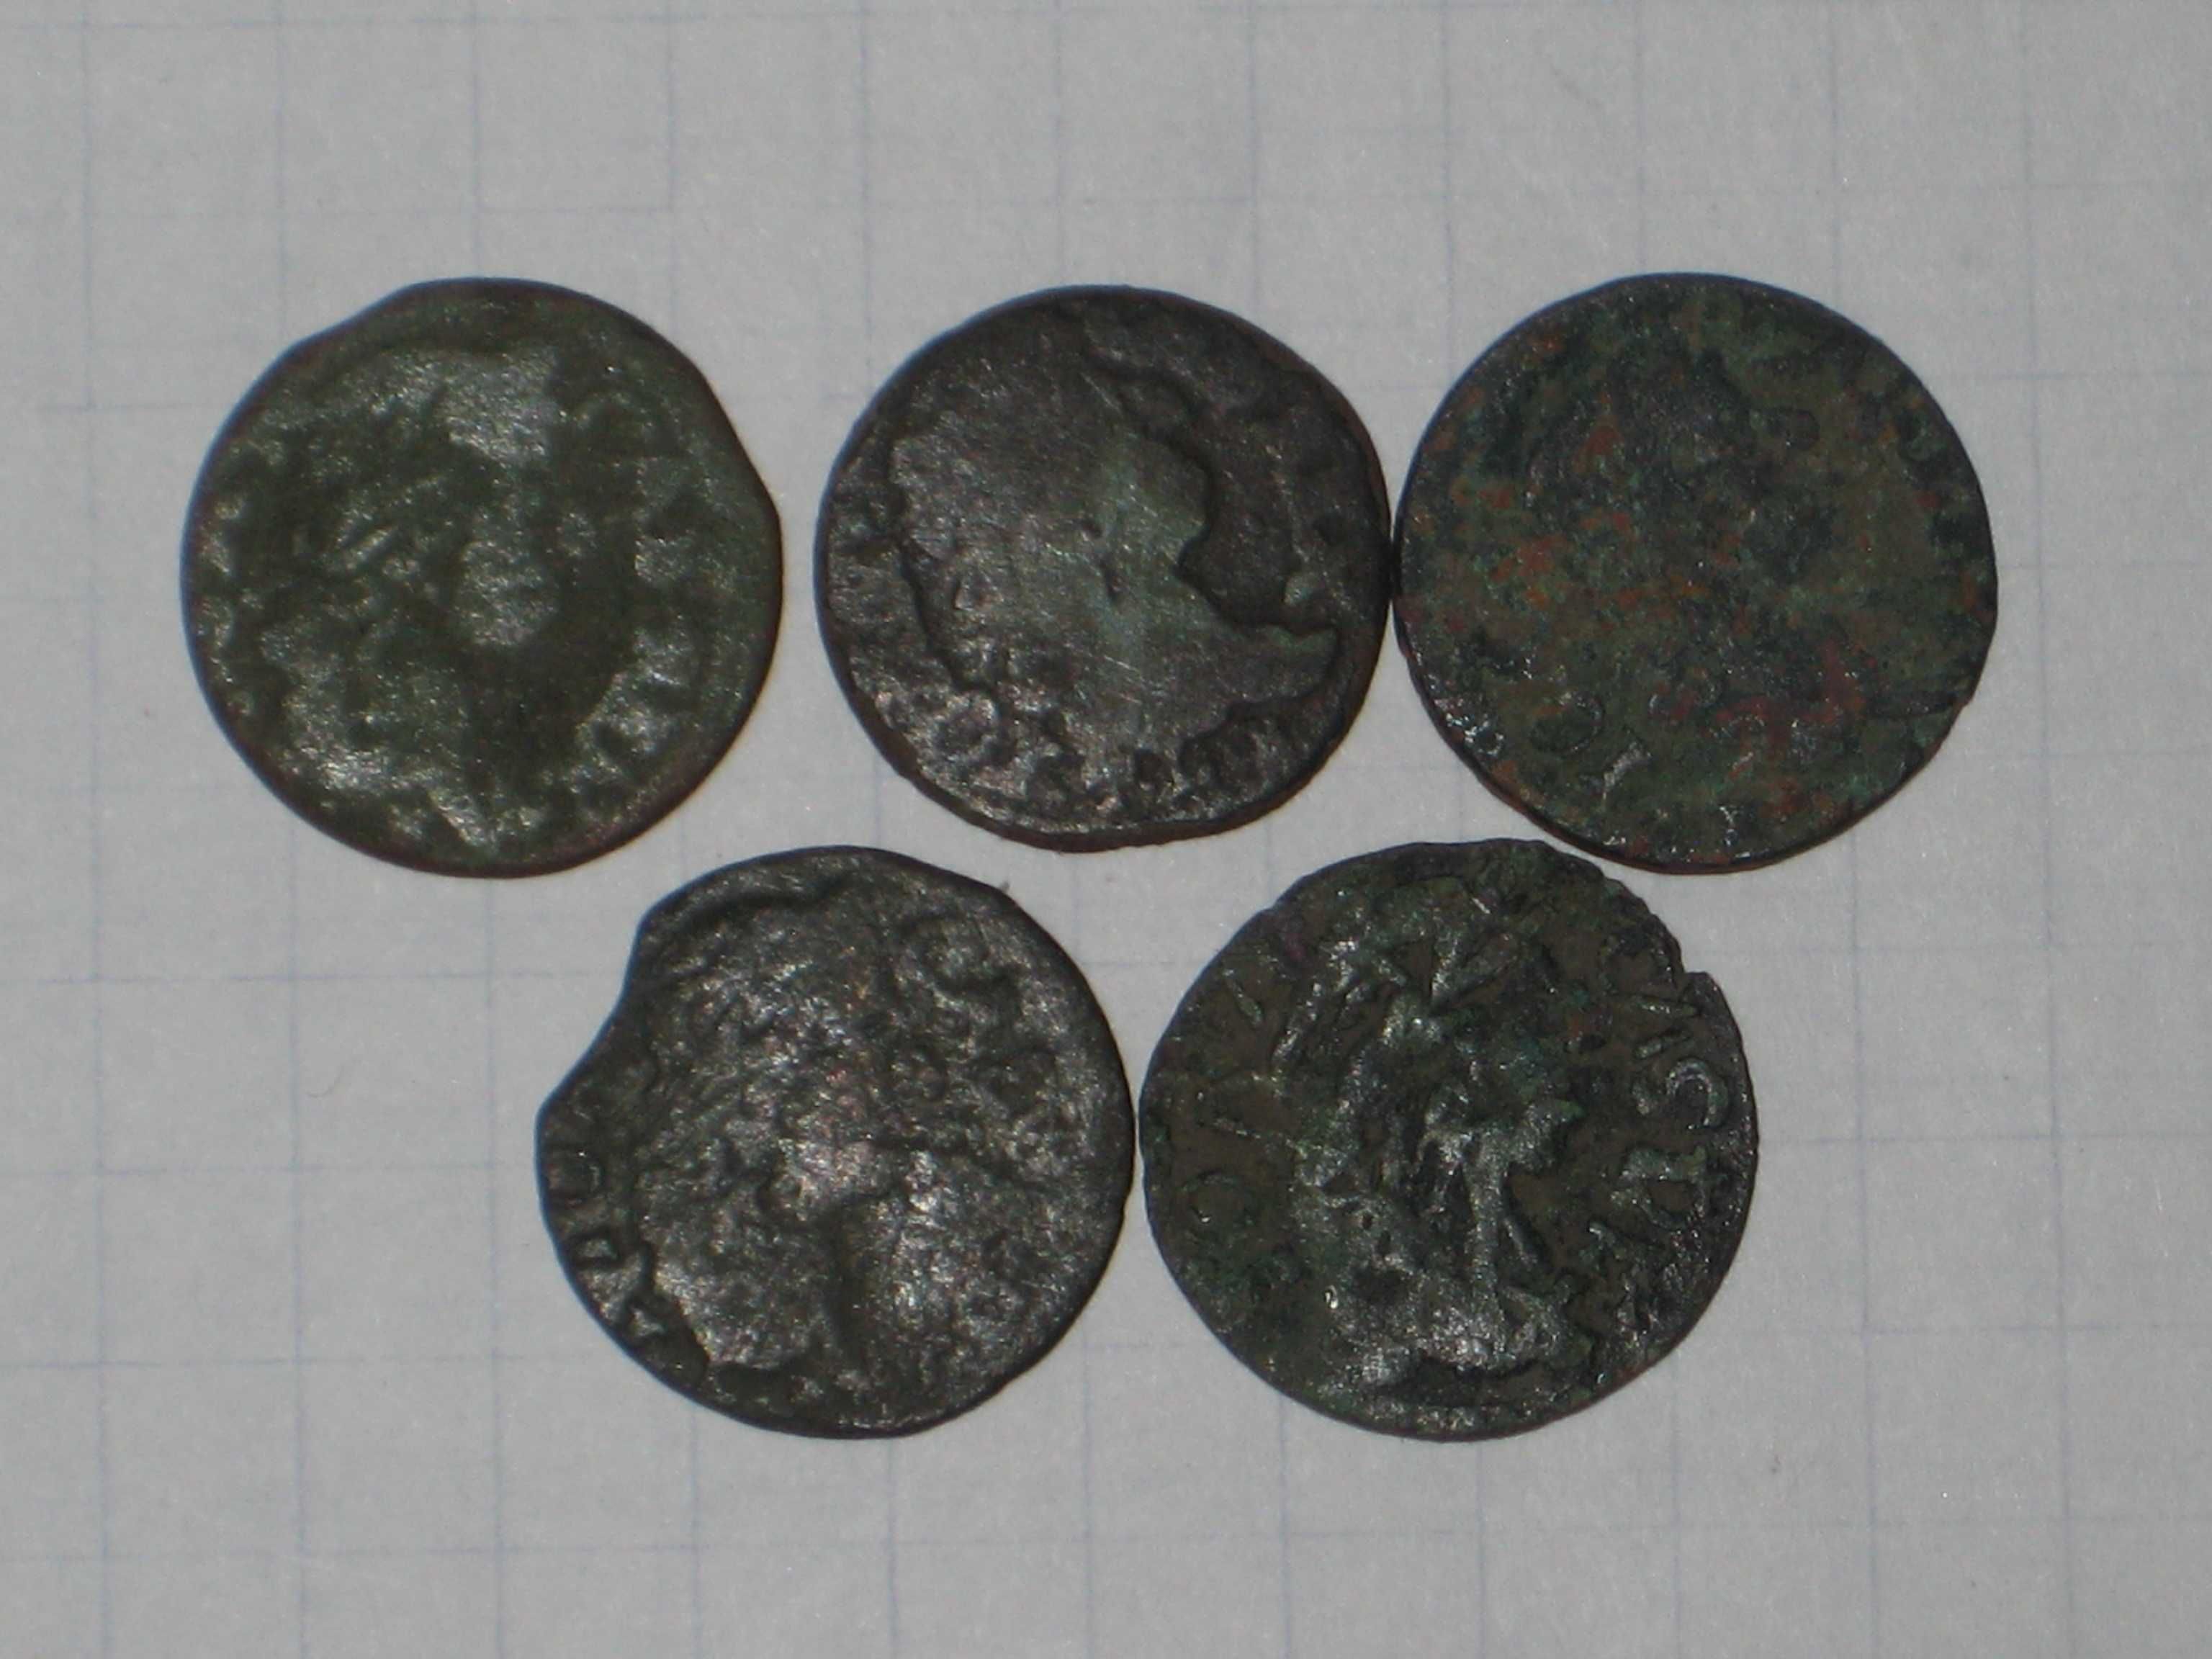 5шт. Монети Середньові́ччя 17ст. Польща боротинки мідні Соліди